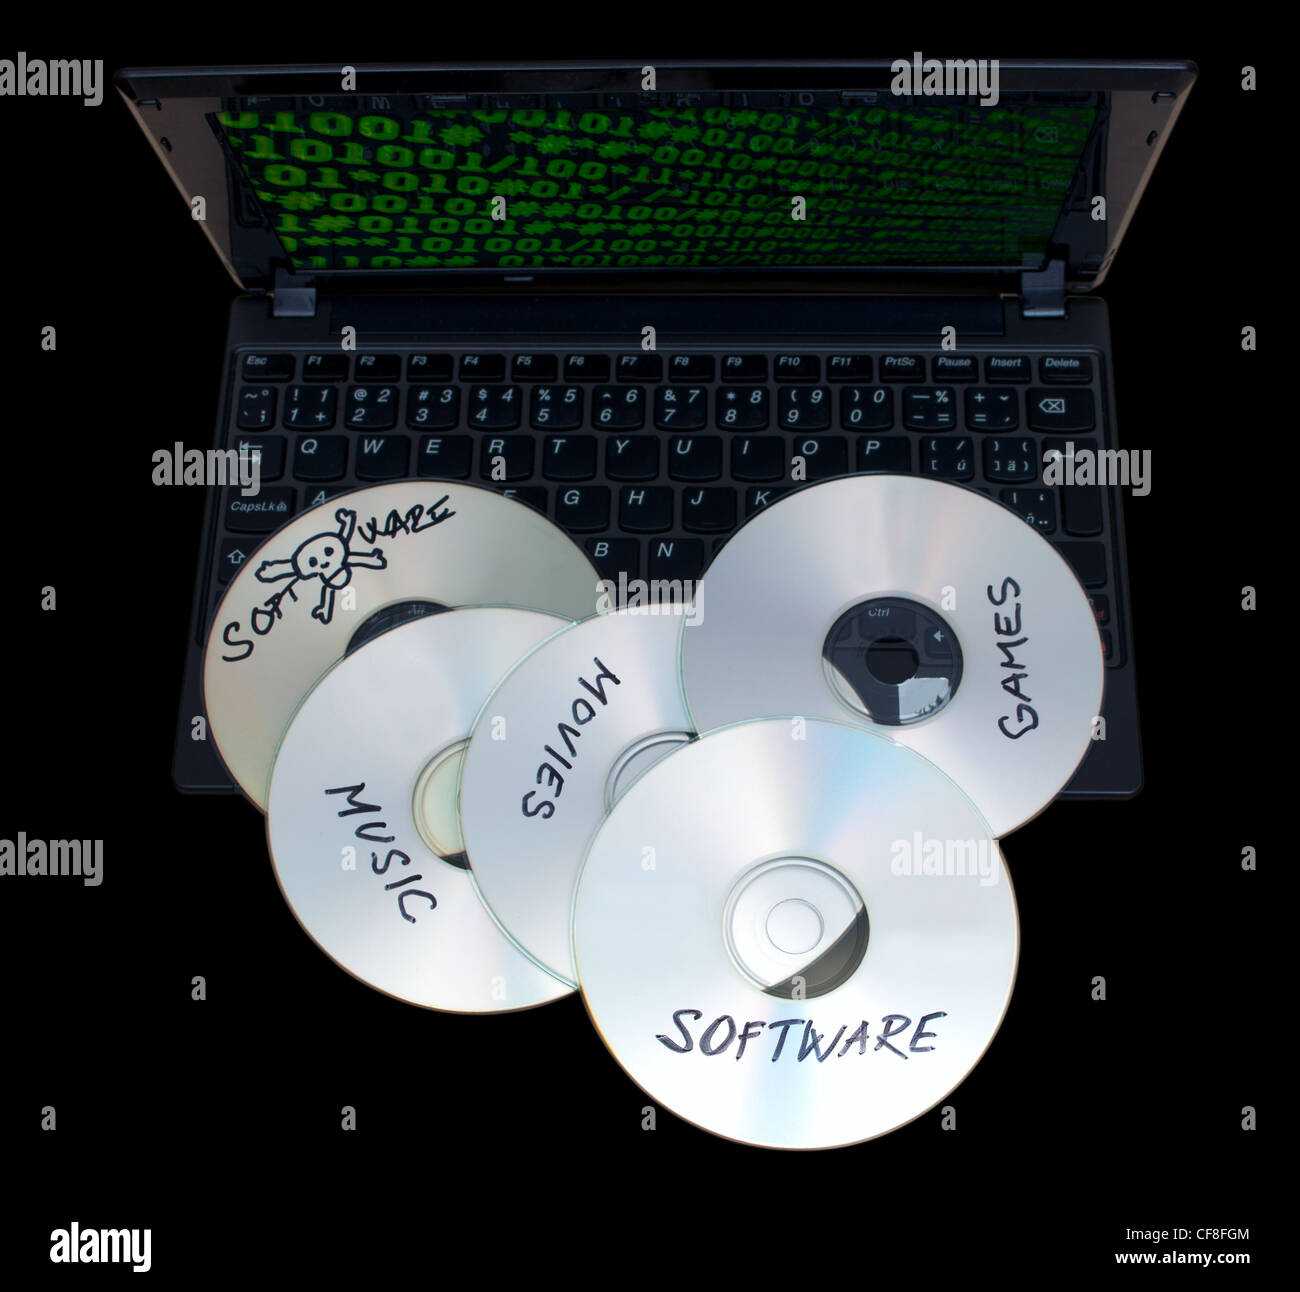 Piraterie-Konzept - gebrannte CDs mit illegaler Software auf Tastatur von Notebook - auf schwarzem Hintergrund isoliert Stockfoto